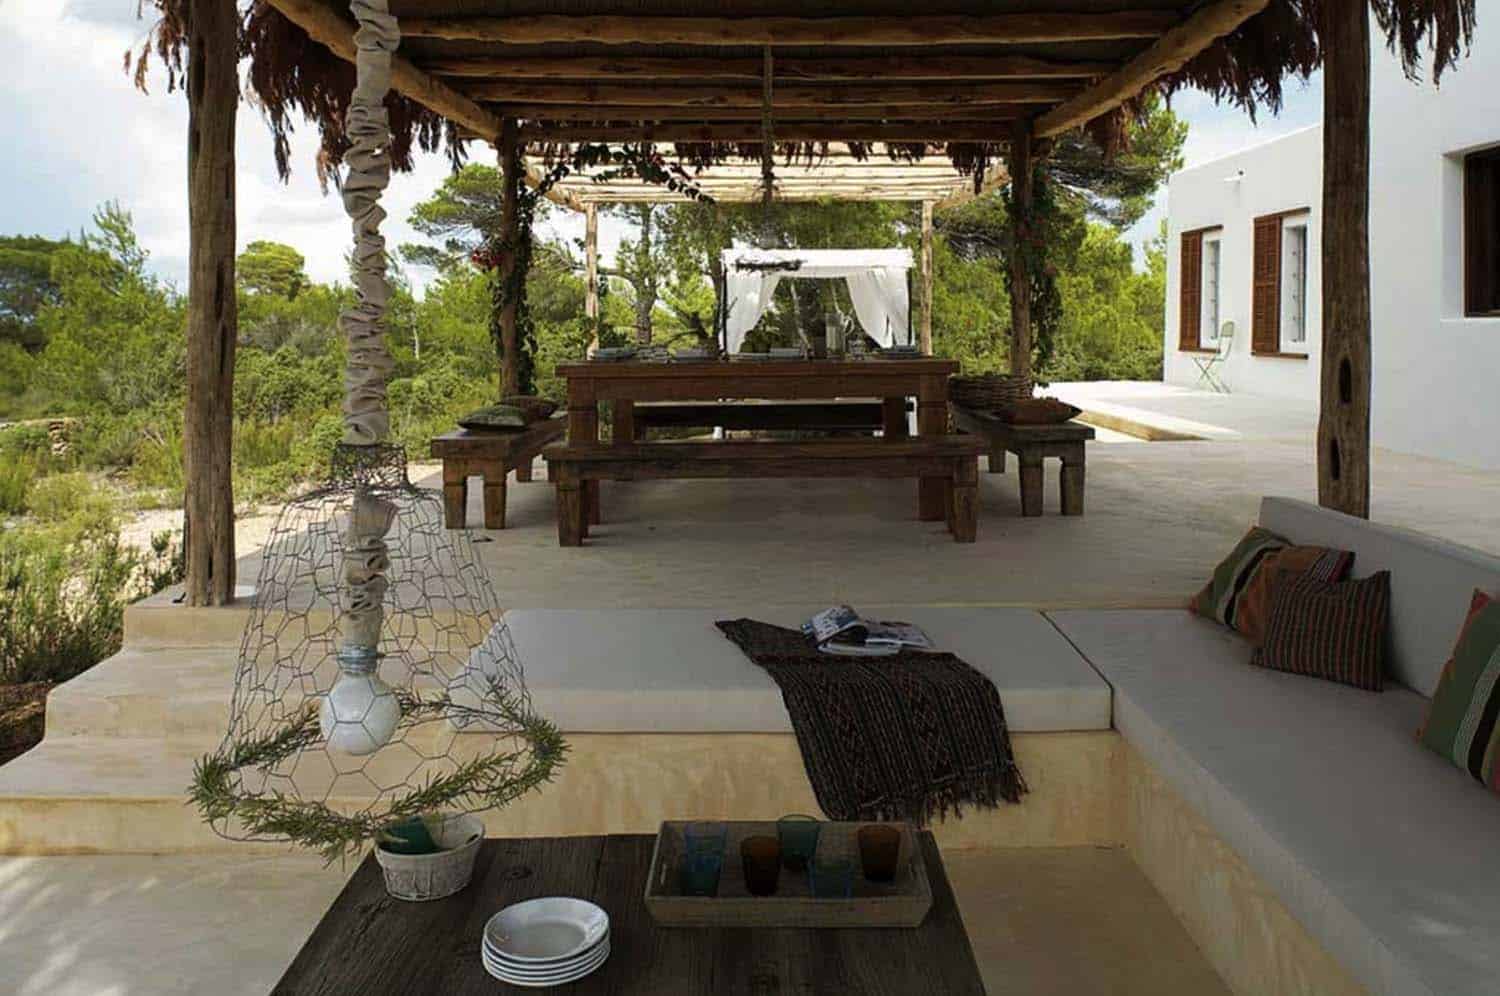 Luxury Seaside Villa Oasis-17-1 Kindesign